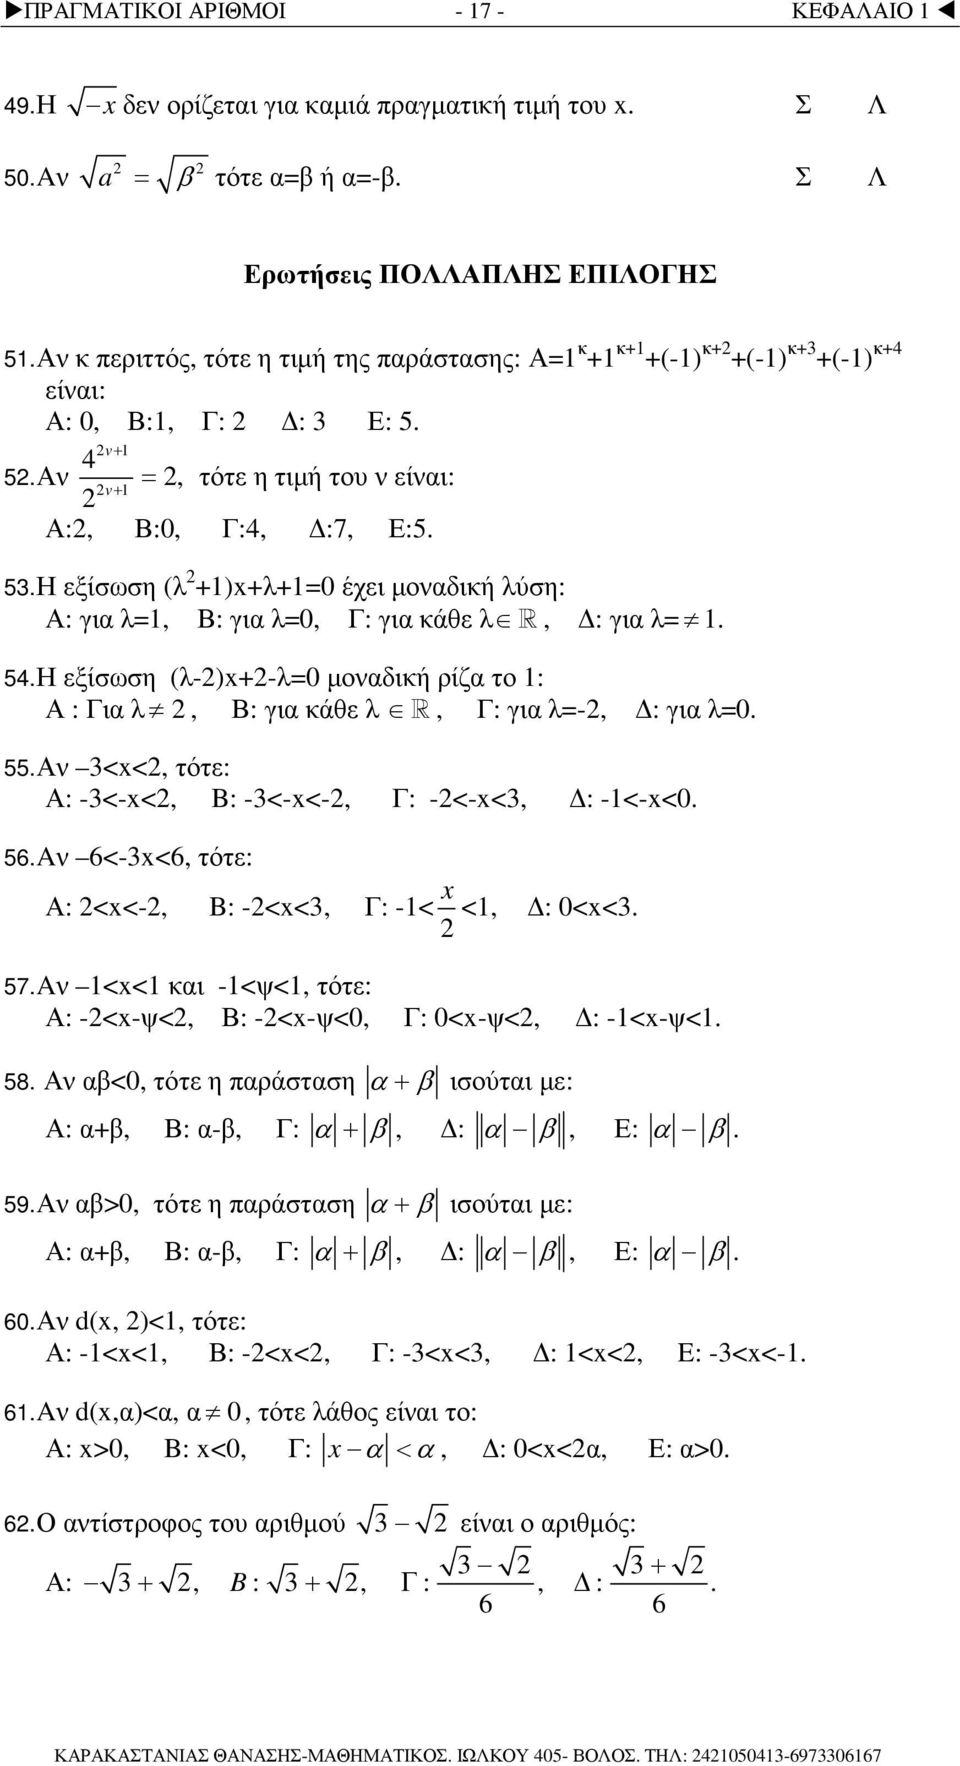 54. Η εξίσωση (λ-)-λ0 µοδική ρίζ το : Α : Γι λ, Β: γι κάθε λ R, Γ: γι λ-, : γι λ0. 55. Α <<, τότε: Α: -<-<, B: -<-<-, Γ: -<-<, : -<-<0. 56. A 6<-<6, τότε: Α: <<-, B: -<<, Γ: -< <, : 0<<. 57.